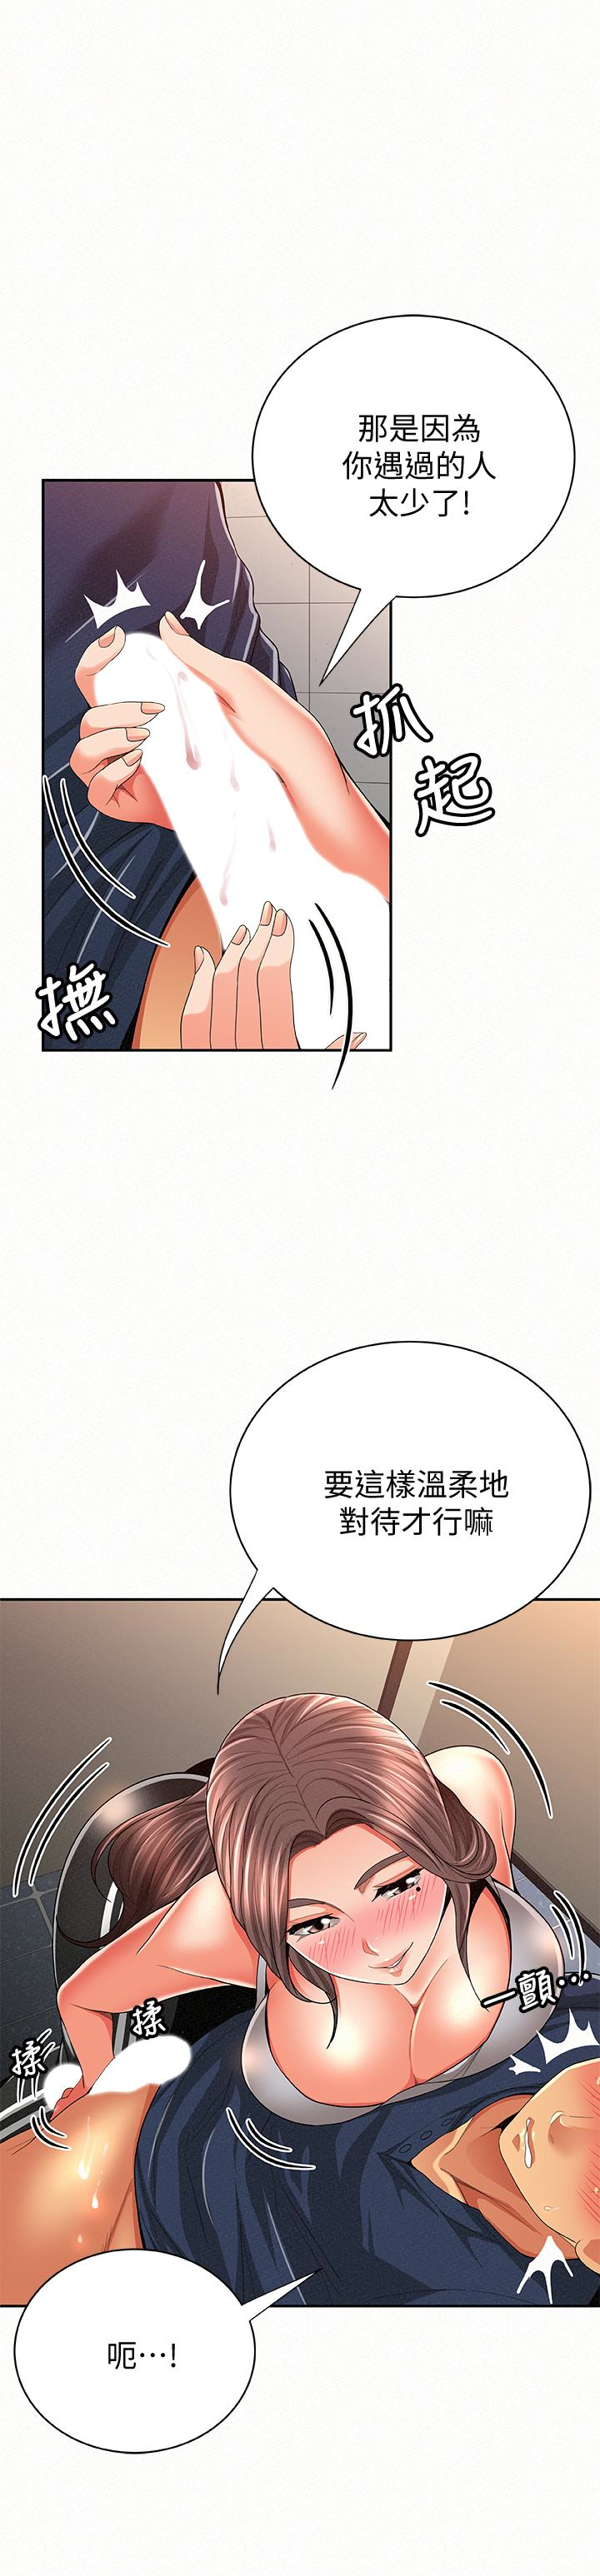 韩国污漫画 報告夫人 第41话-仁华吸力强劲的小穴 12